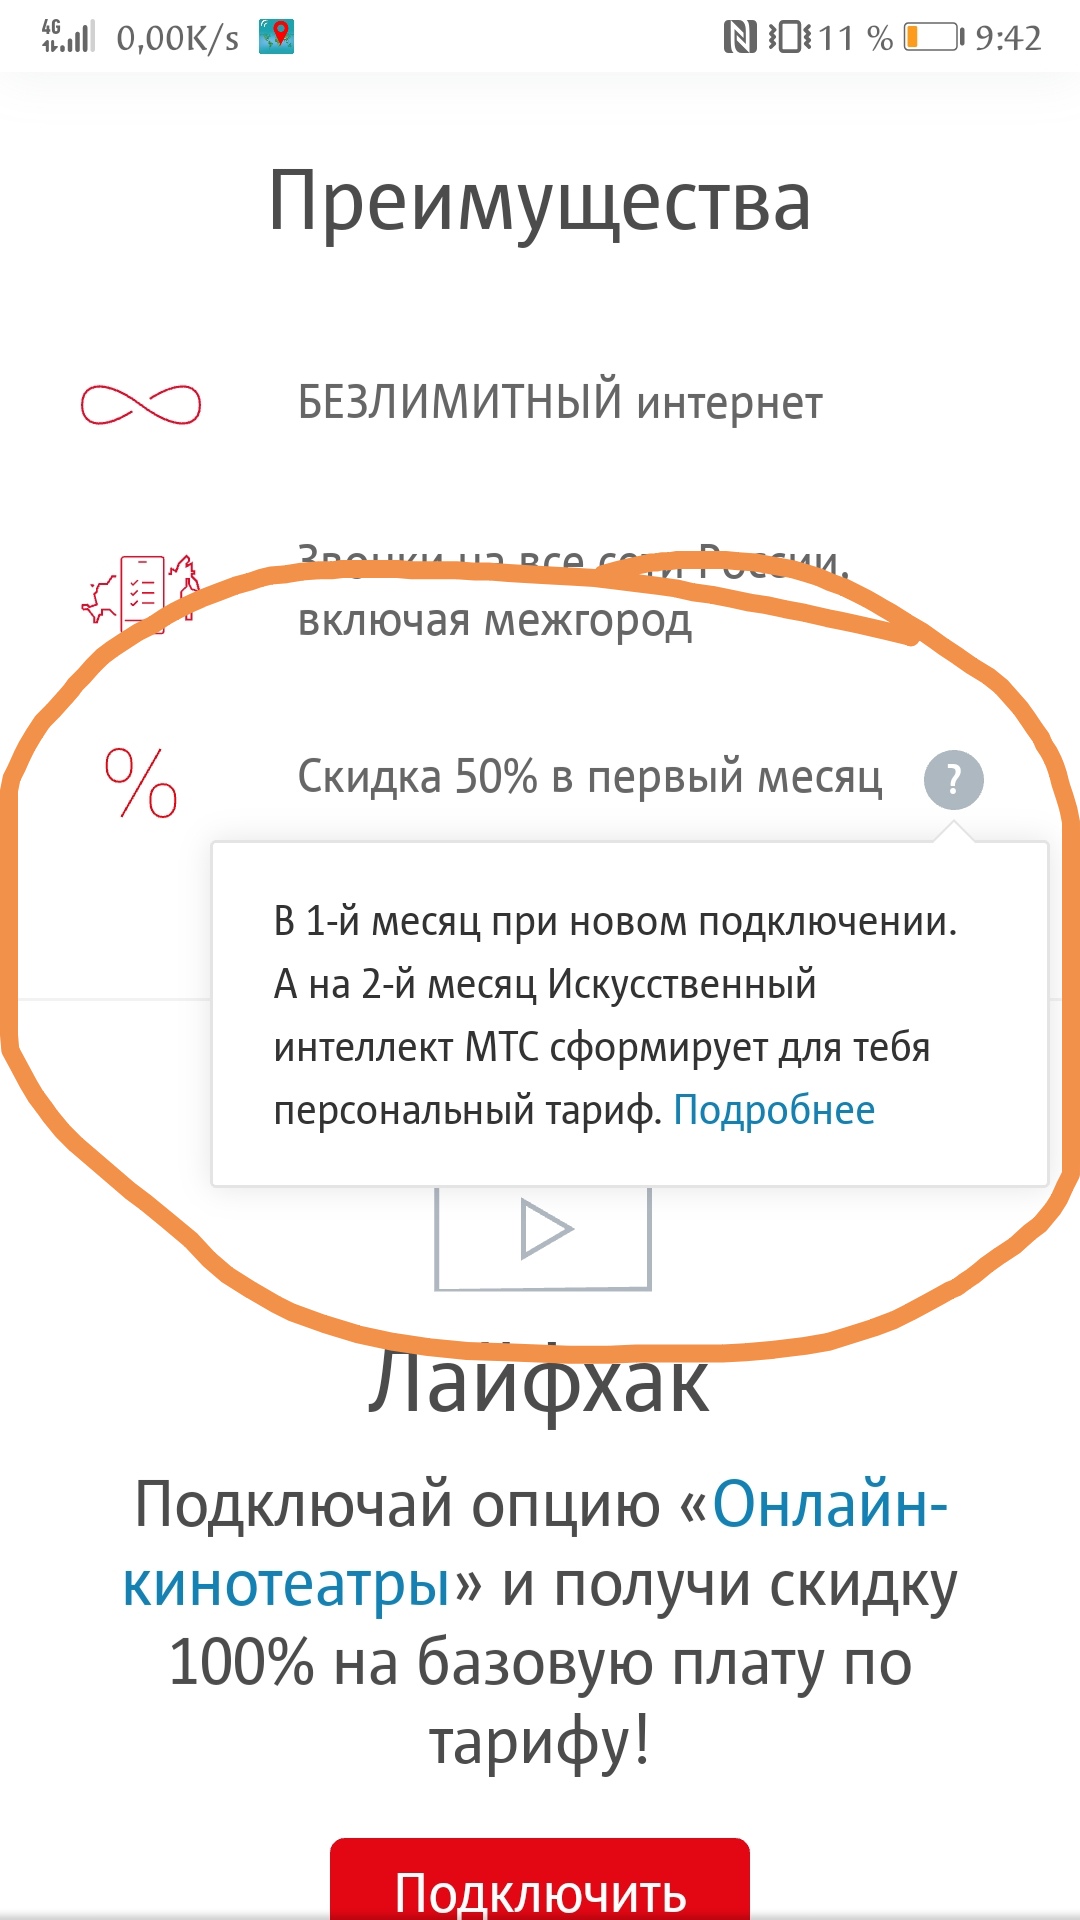 Саяногорск Инфо - screenshot_20200104_094309.jpg, Скачано: 451